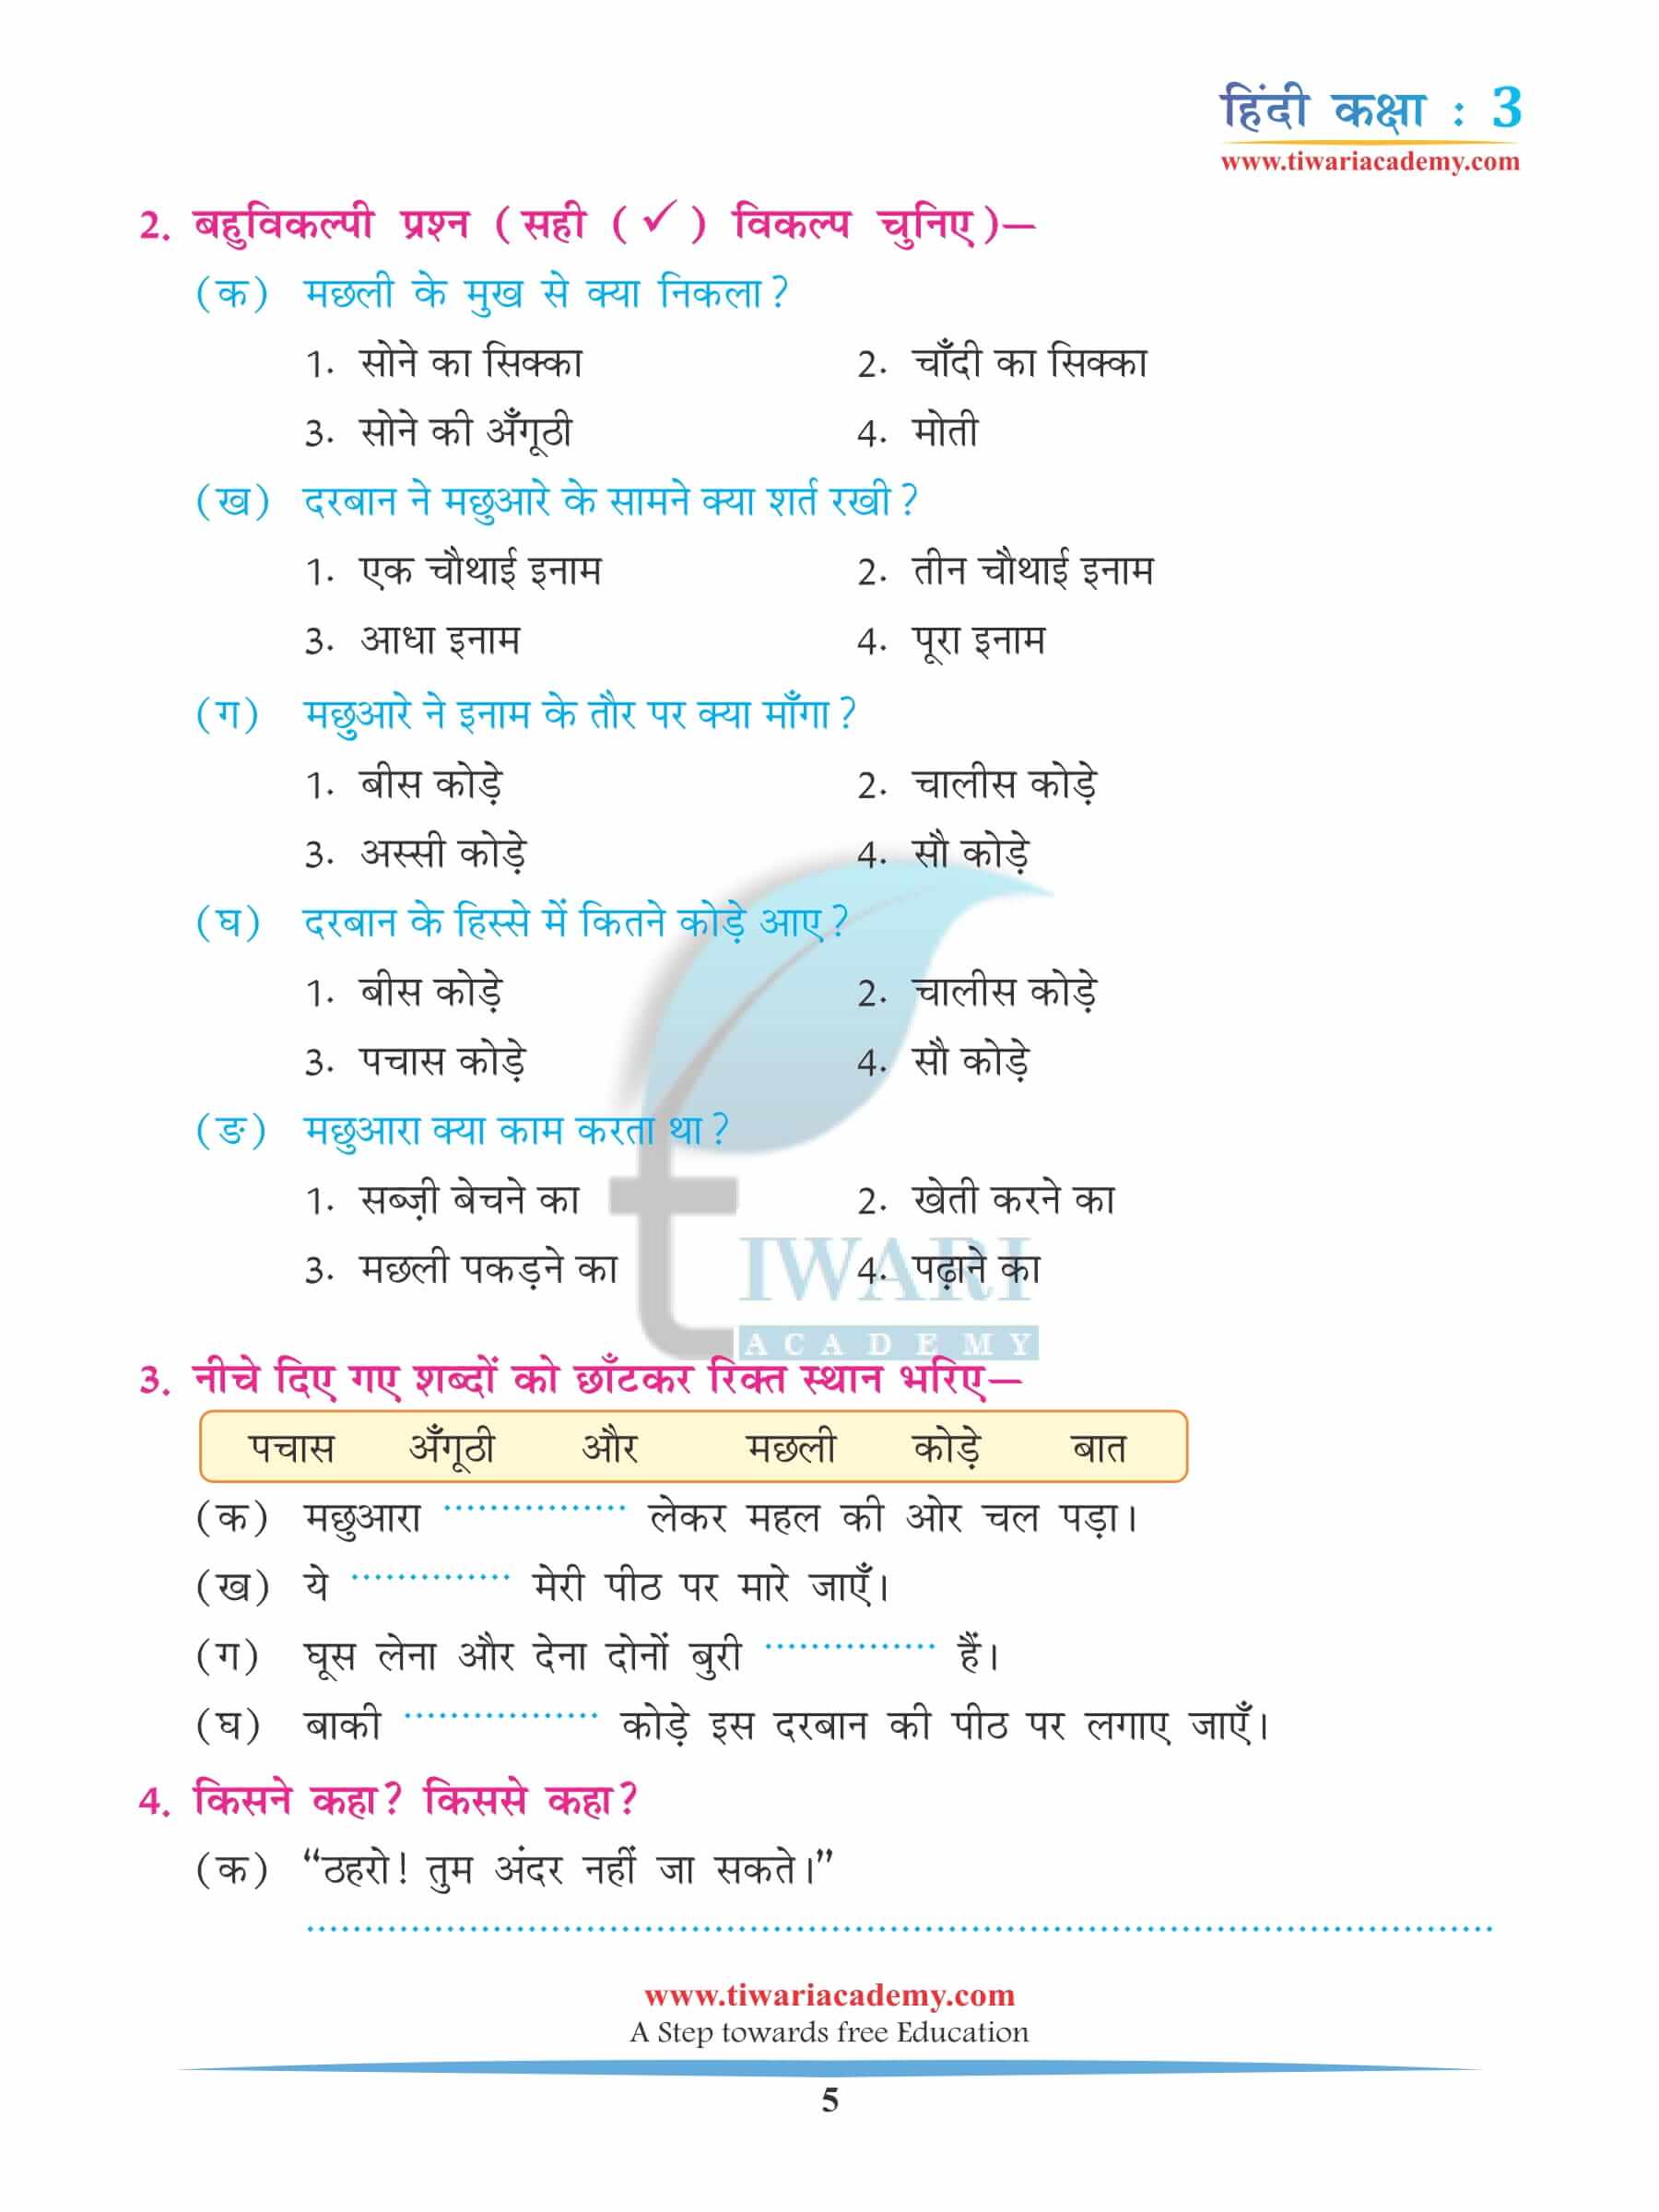 कक्षा 3 हिंदी अध्याय 13 अभ्यास के उत्तर